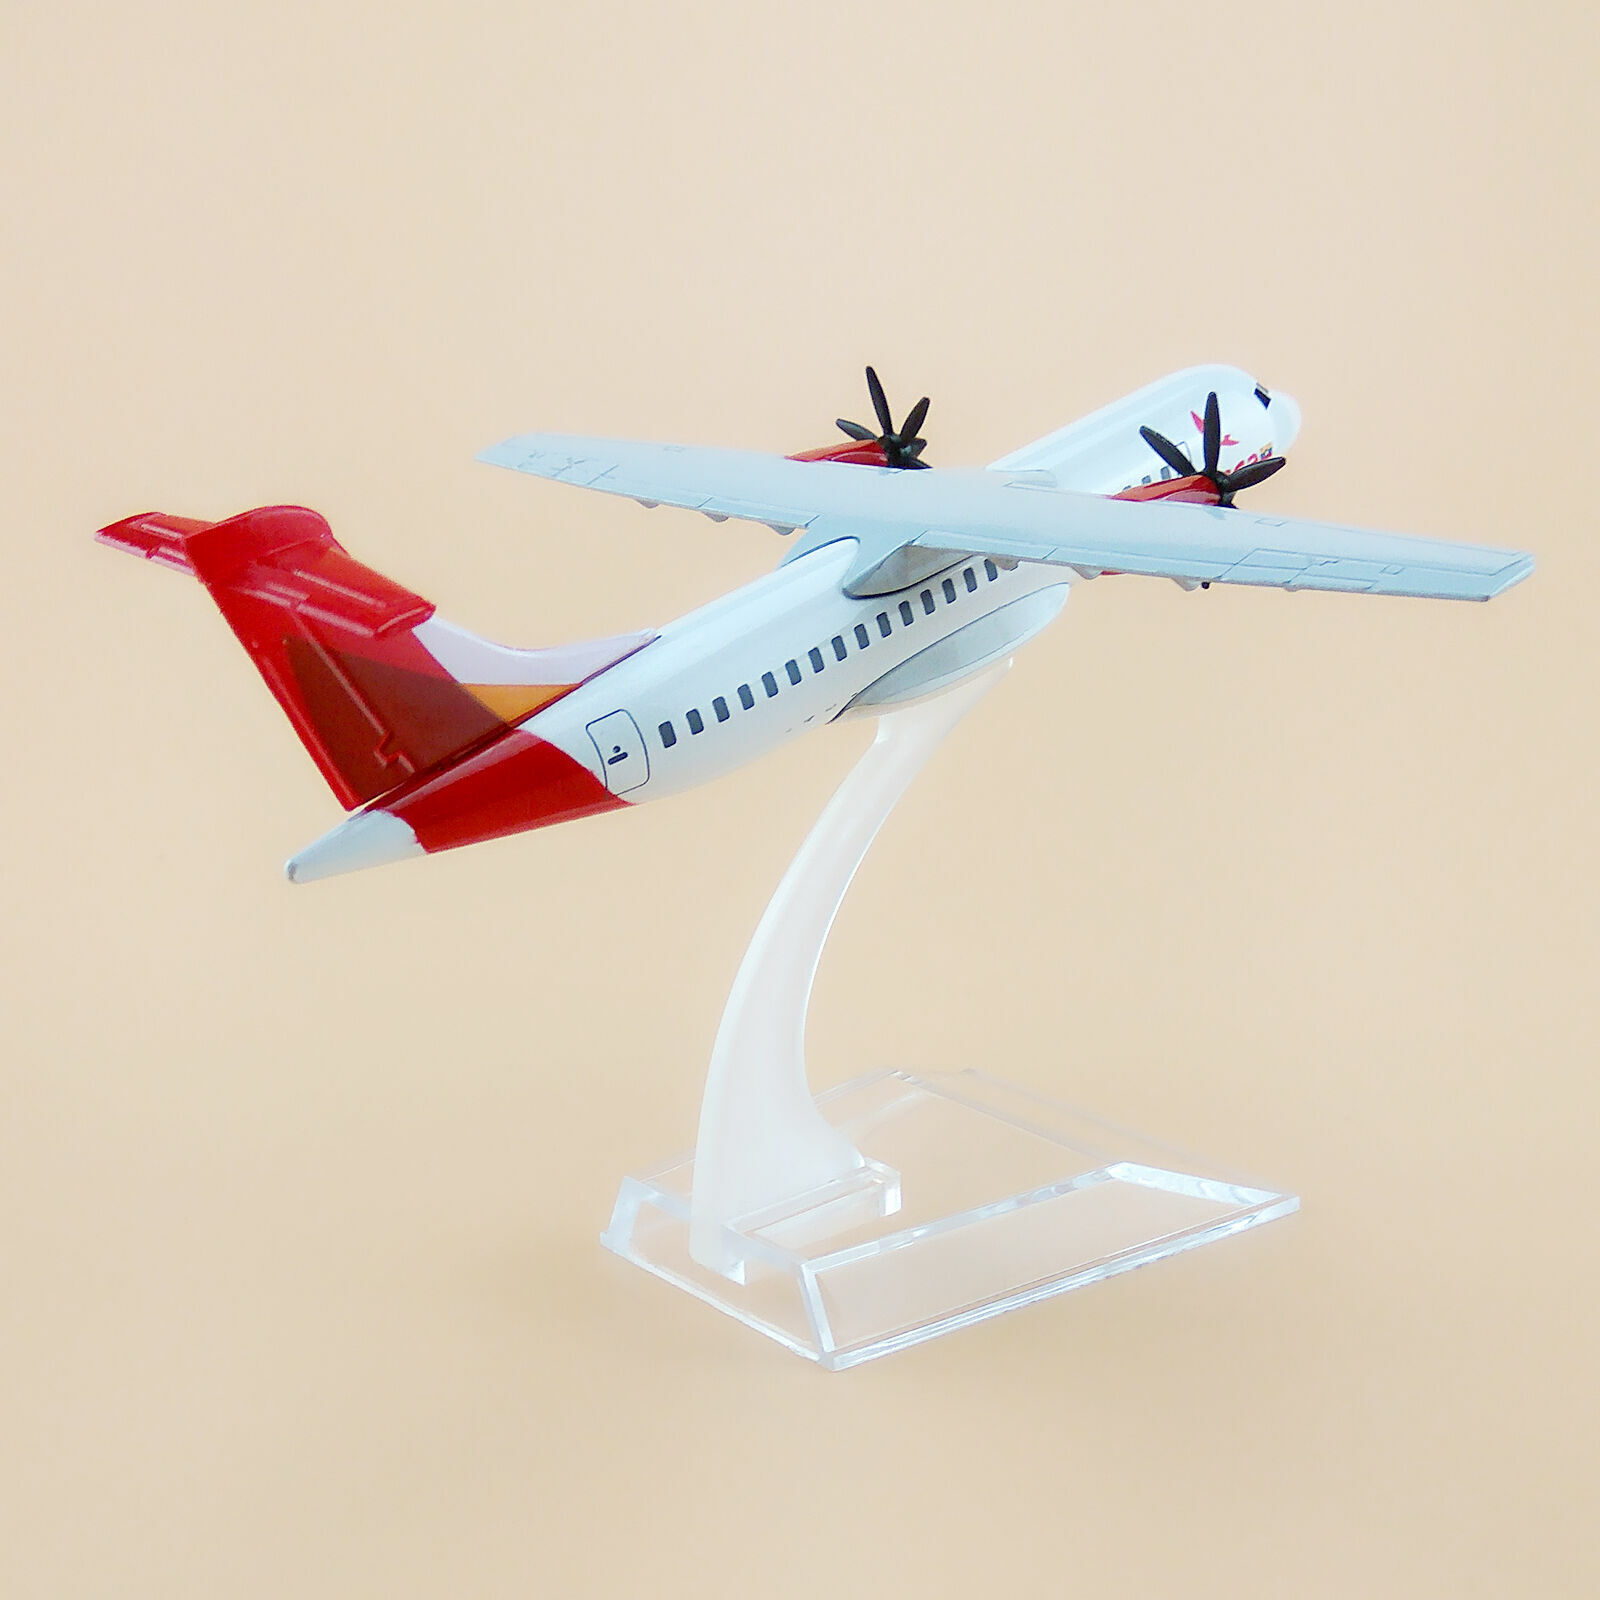 16cm  Air Avianca ATR-600 ATR 600 Metal Airplane Model Airlines Aircraft Toy